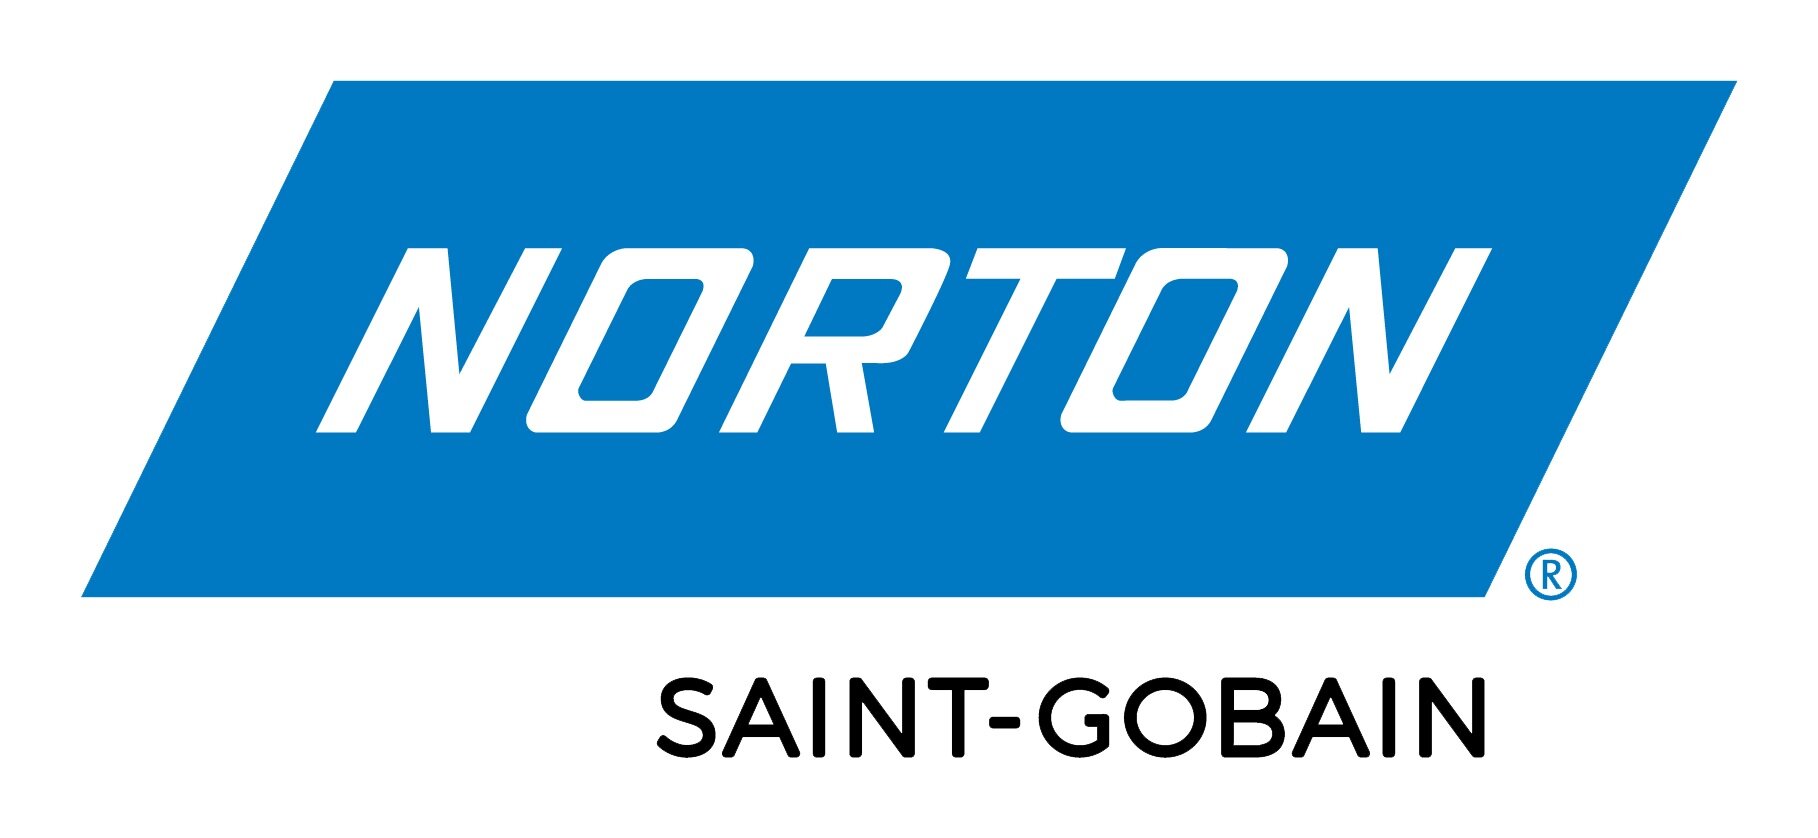 SG_Norton_logo_rgb.png